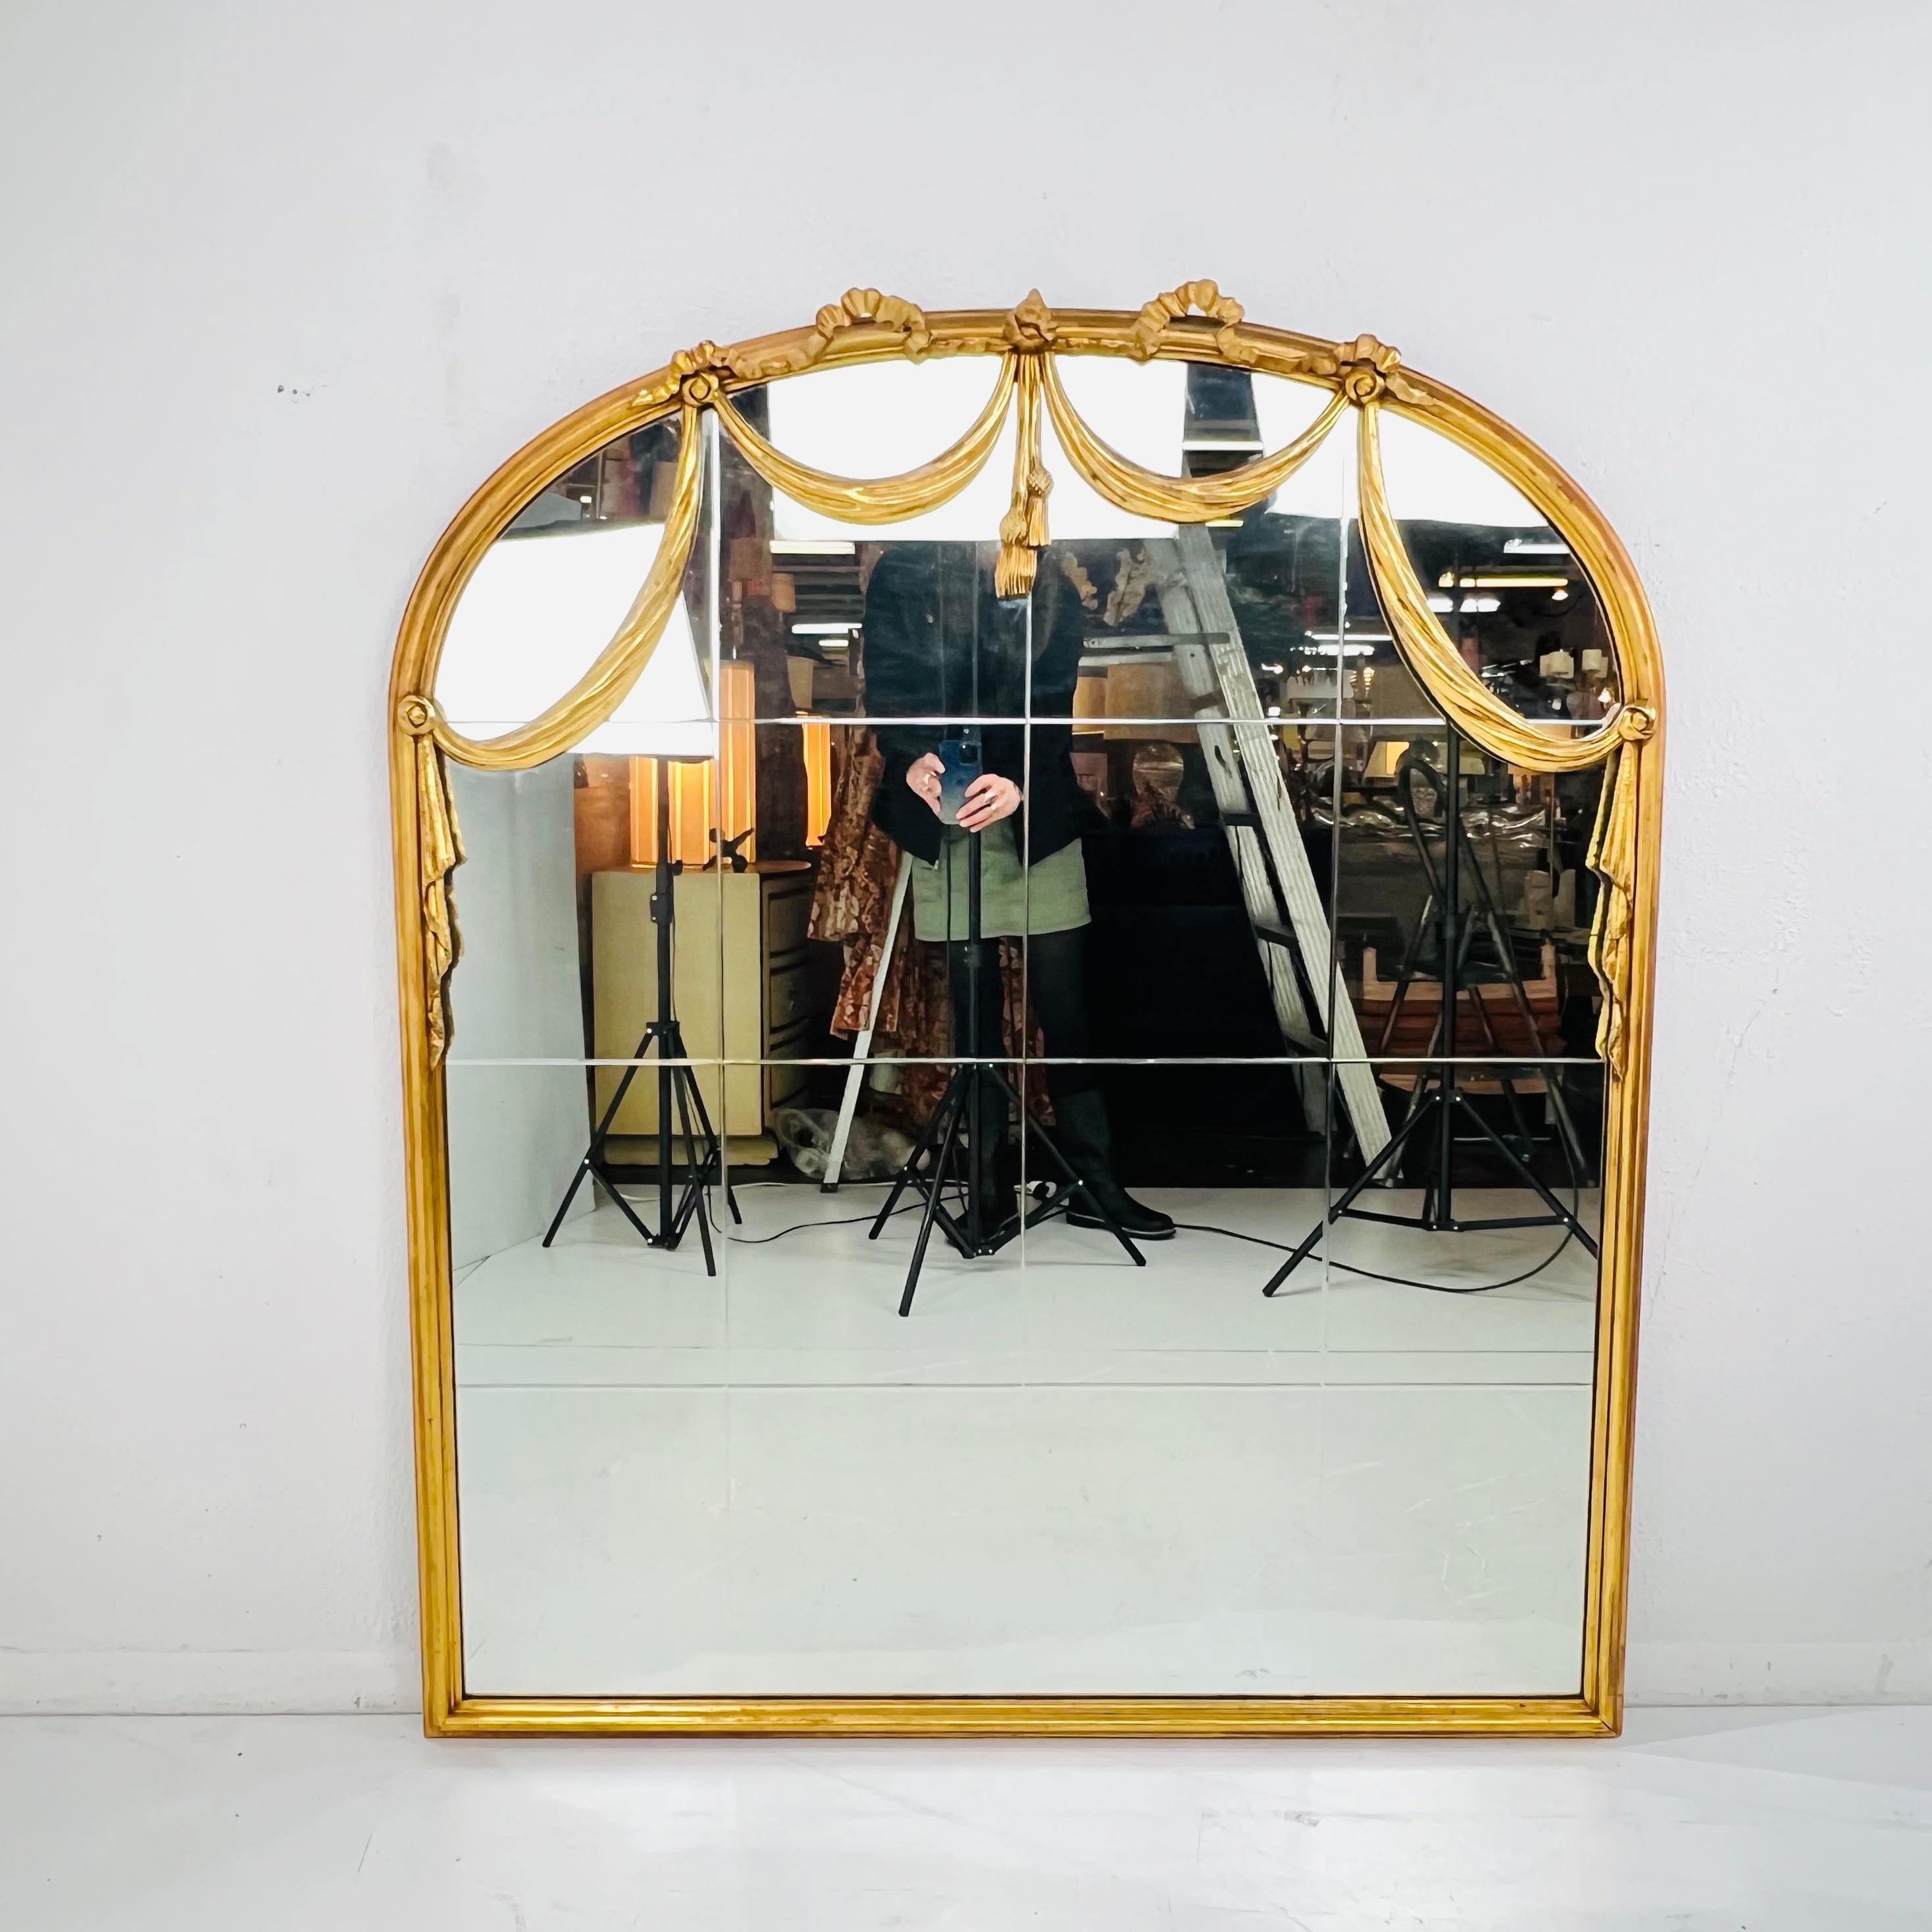 Miroir mural ancien en bois doré avec deux draperies sculptées et un sommet en forme d'arche avec des glands. Le miroir a des vitres gravées. Bon état vintage avec une usure normale due à l'âge et à l'utilisation, pas de cassures ou de fissures sur